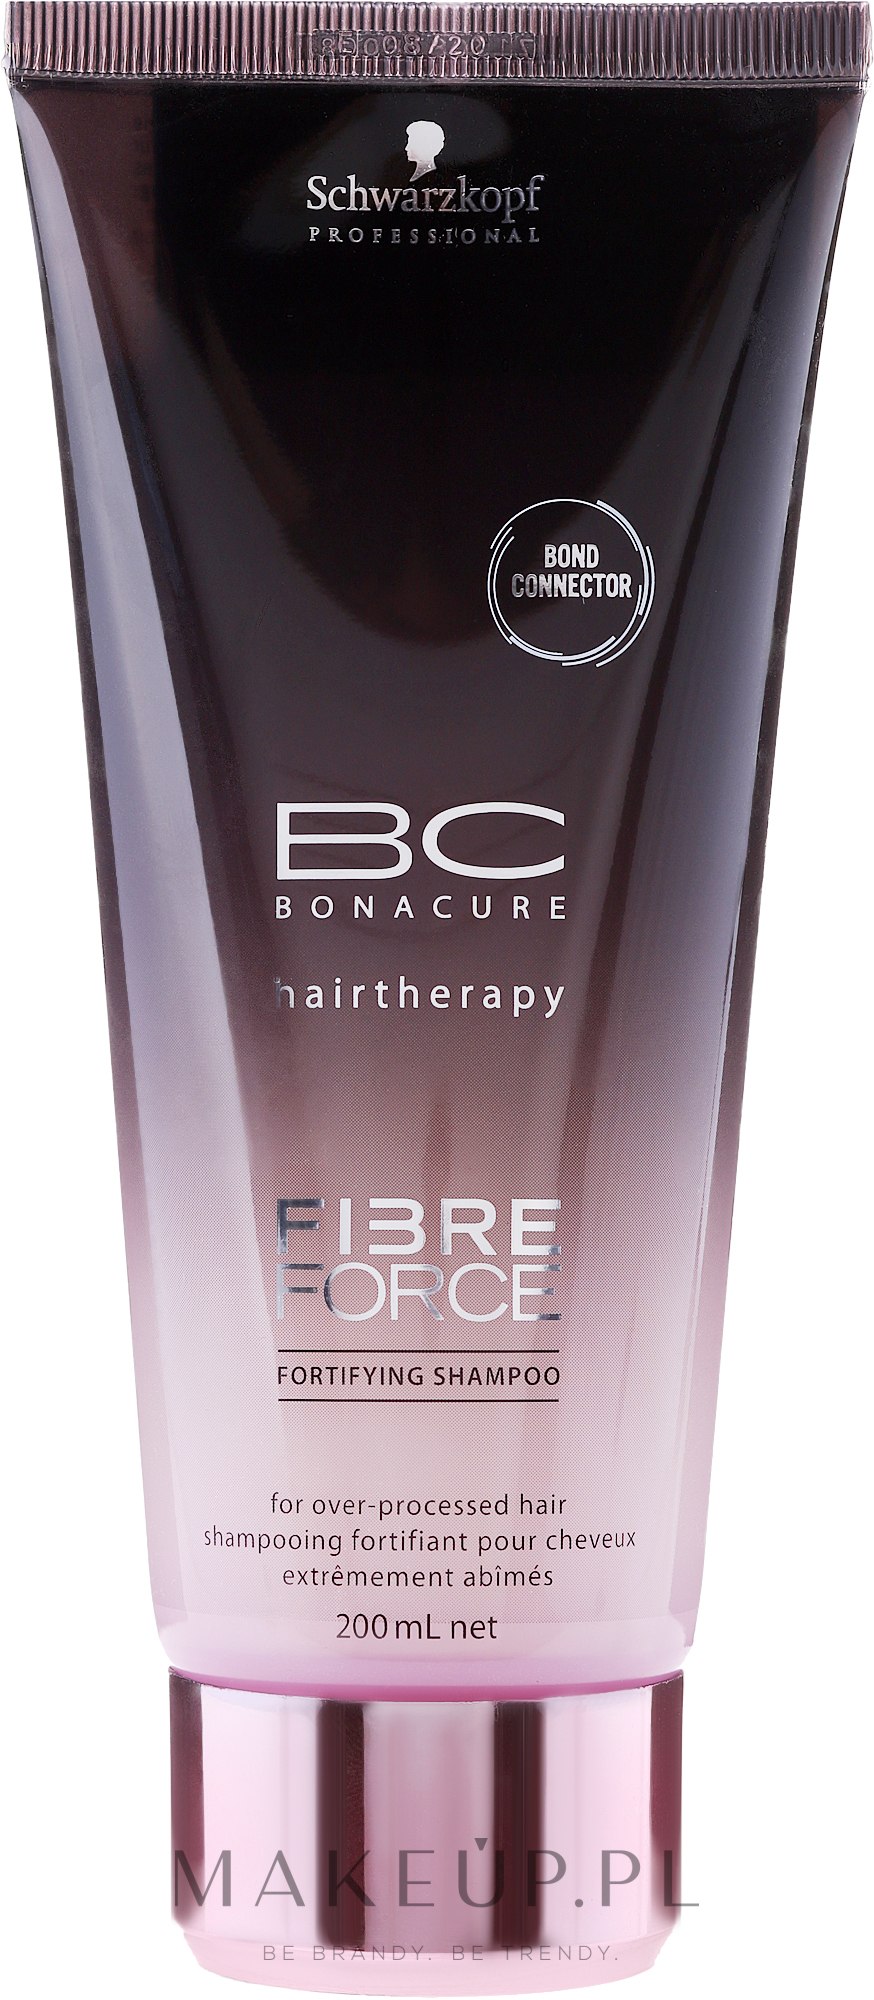 Wzmacniający szampon do włosów zniszczonych - Schwarzkopf Professional BC Bonacure Fibre Force Fortifying Shampoo — Zdjęcie 200 ml